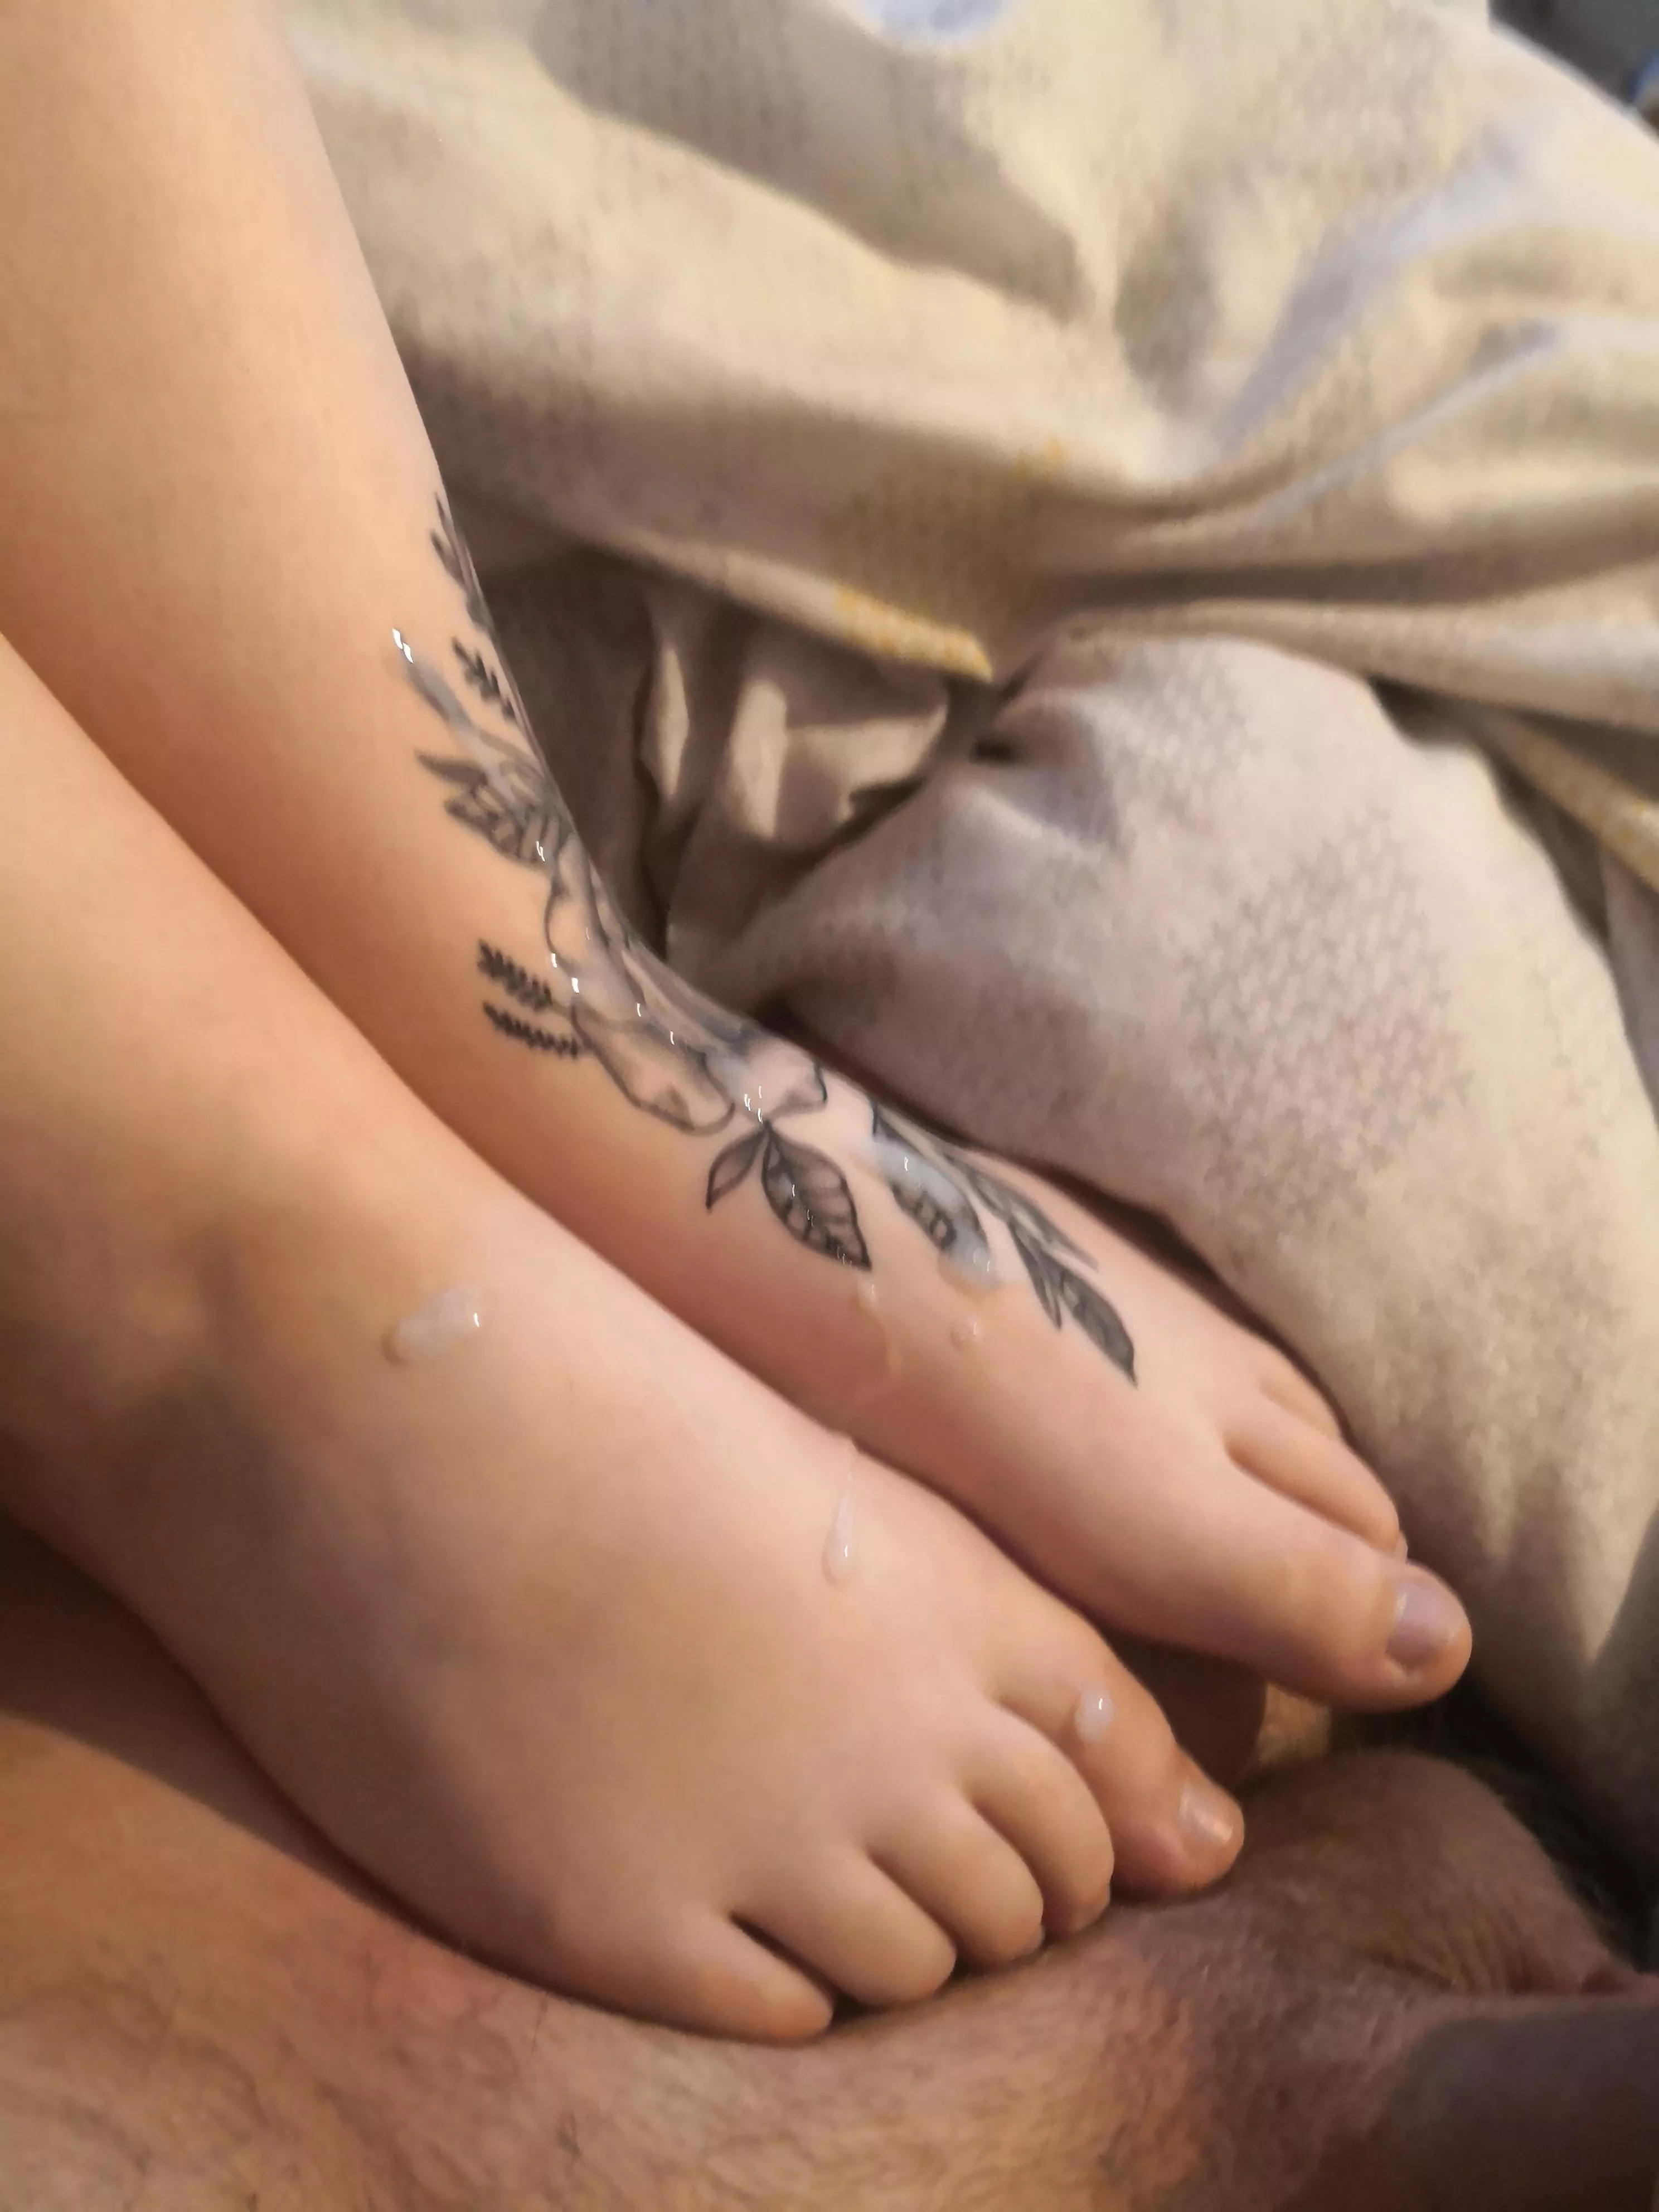 Girlfriend licks cum off her feet